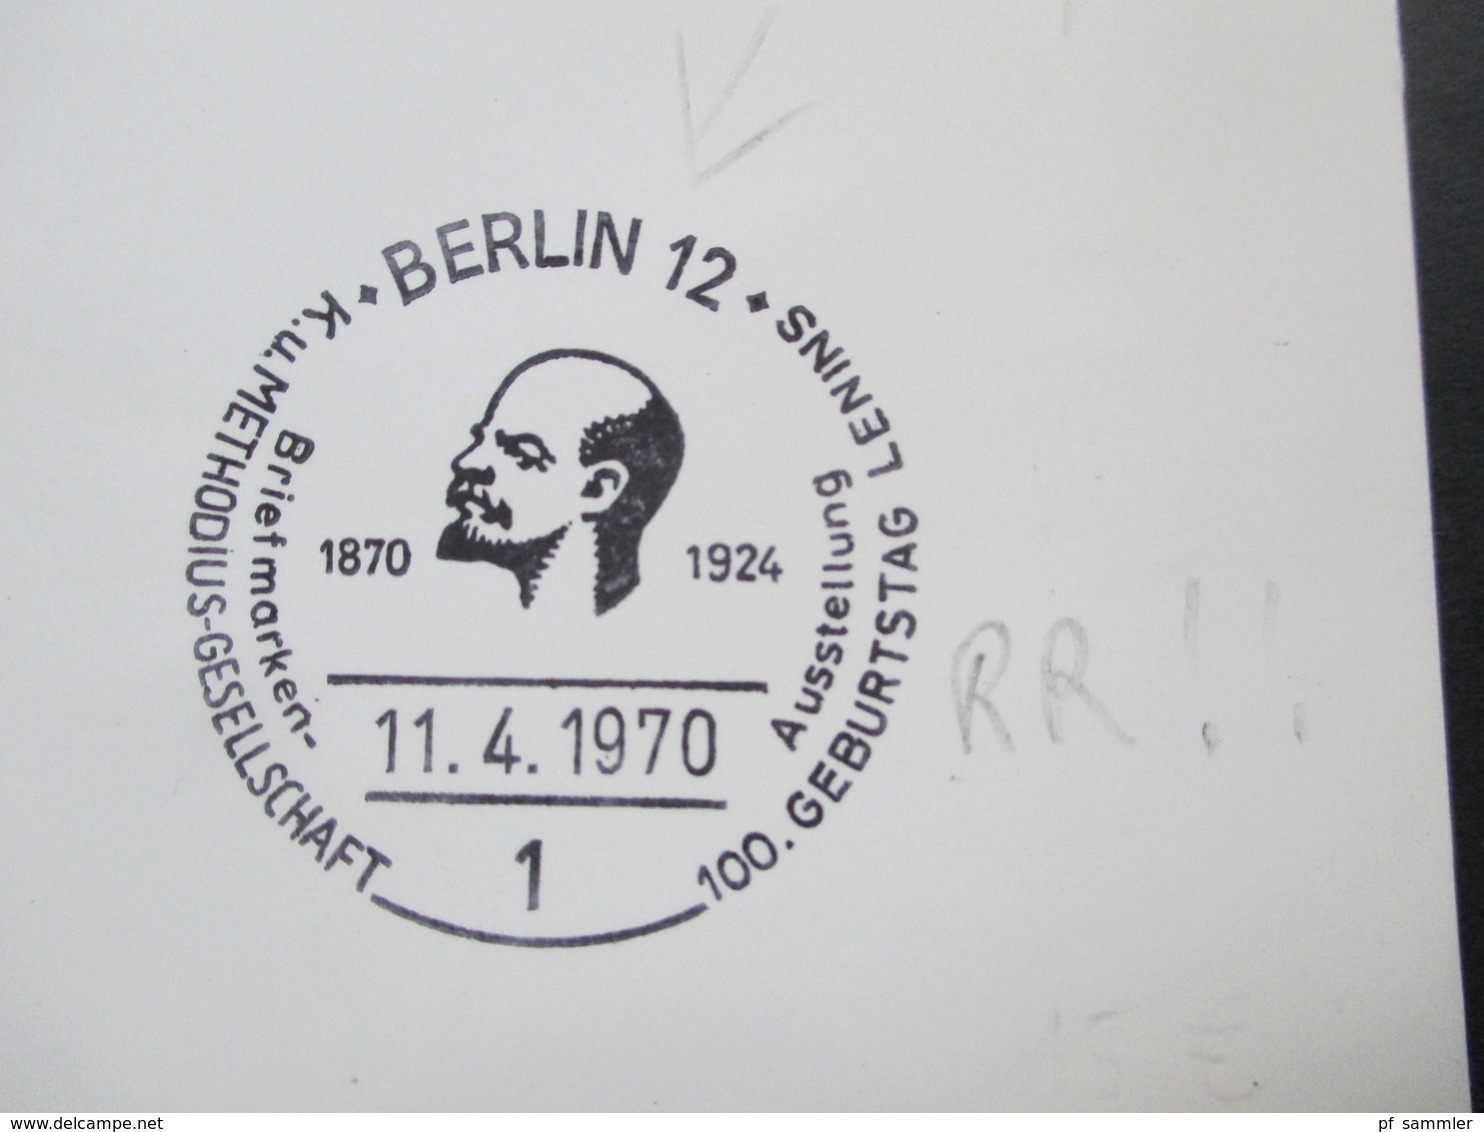 Berlin 1970 Sonderkarte / SST Berlin 12 100. Geburtstag Lenins K. U. Methodius Gesellschaft. Seltener Sonderstempel - Lettres & Documents